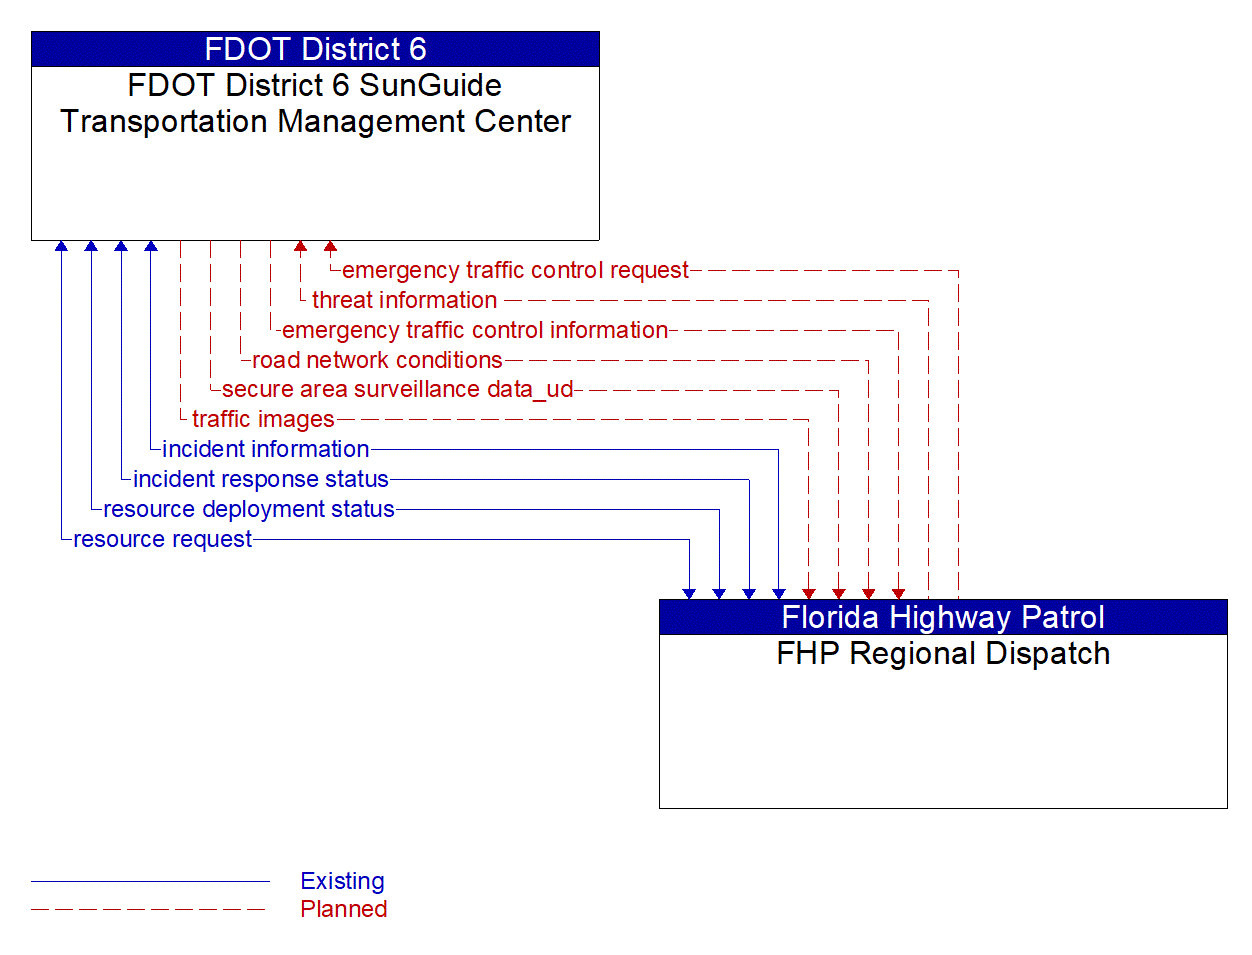 Architecture Flow Diagram: FHP Regional Dispatch <--> FDOT District 6 SunGuide Transportation Management Center